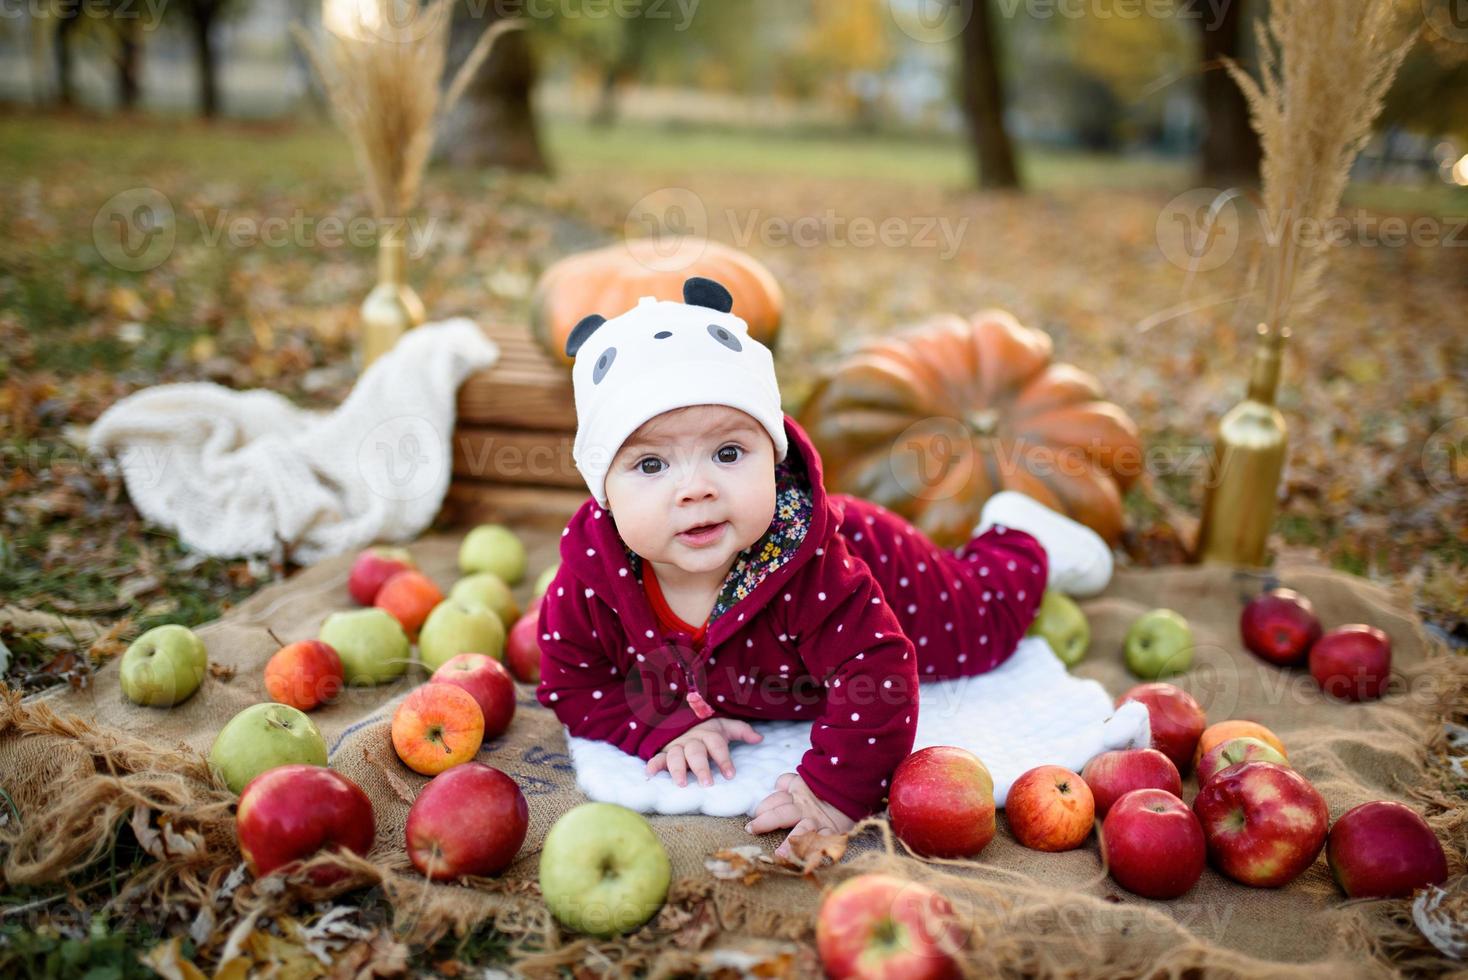 niña elige una manzana para la primera alimentación foto